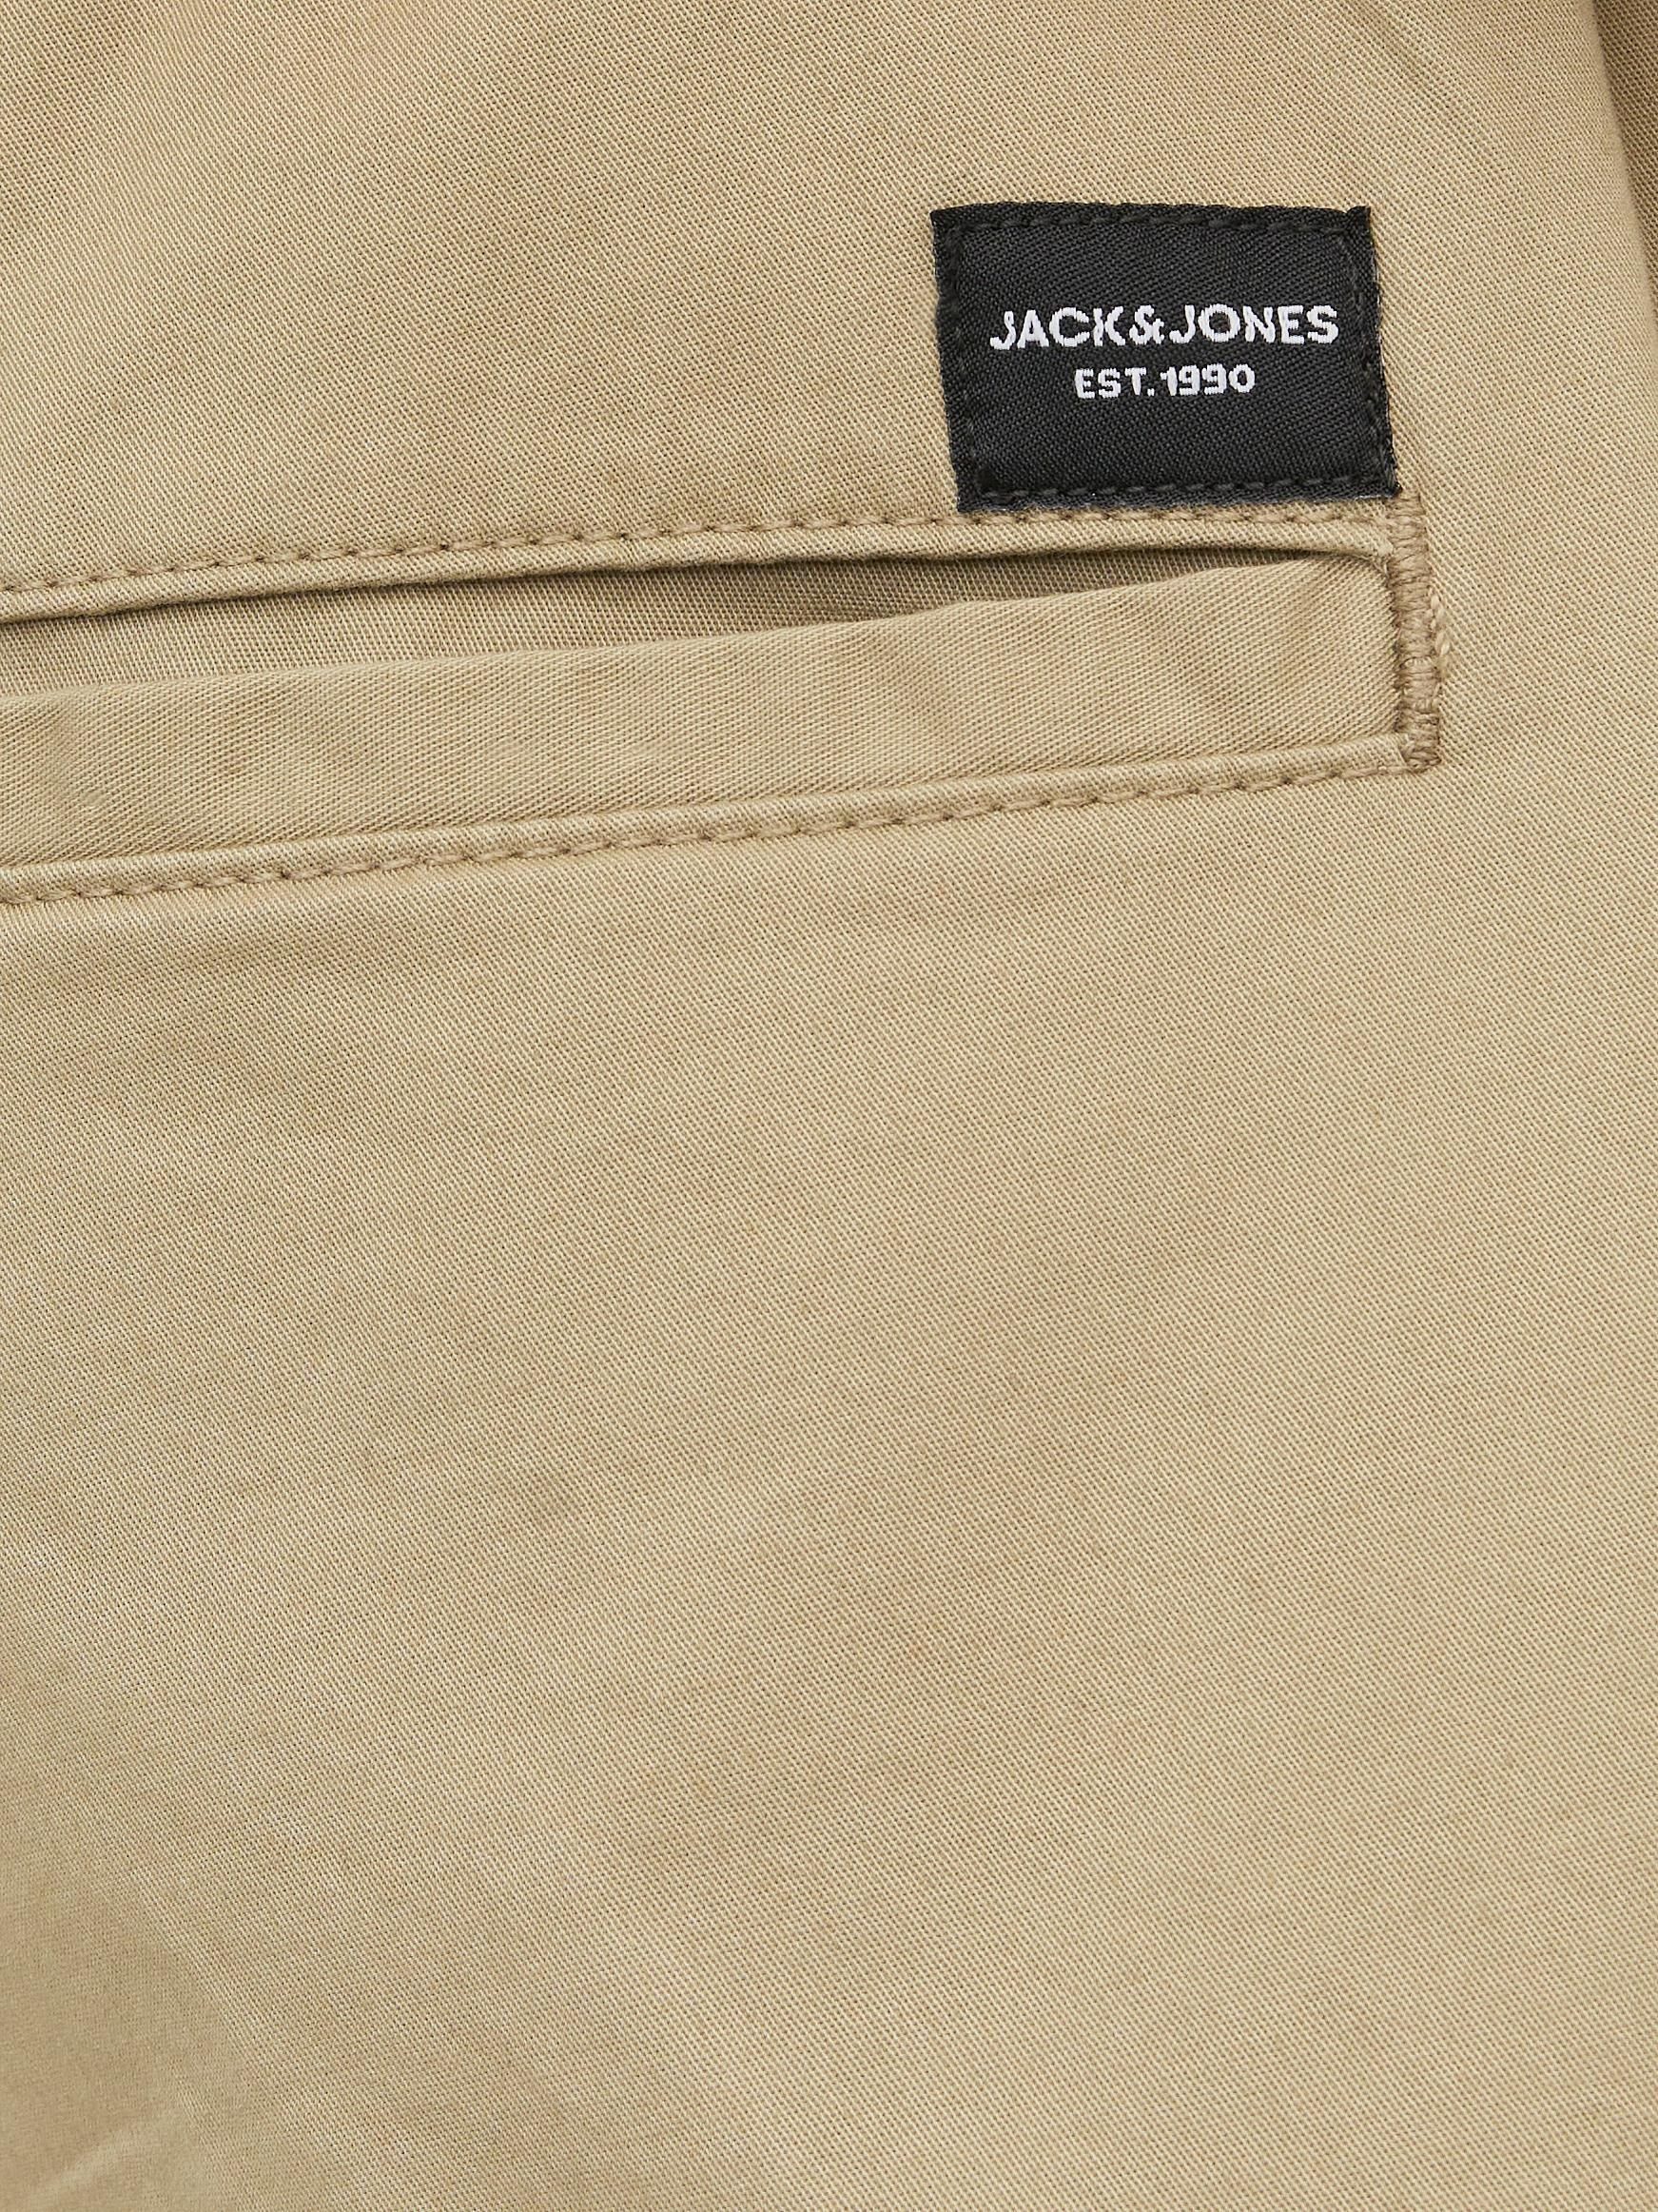 Jones & Jack 5-Pocket-Hose twill